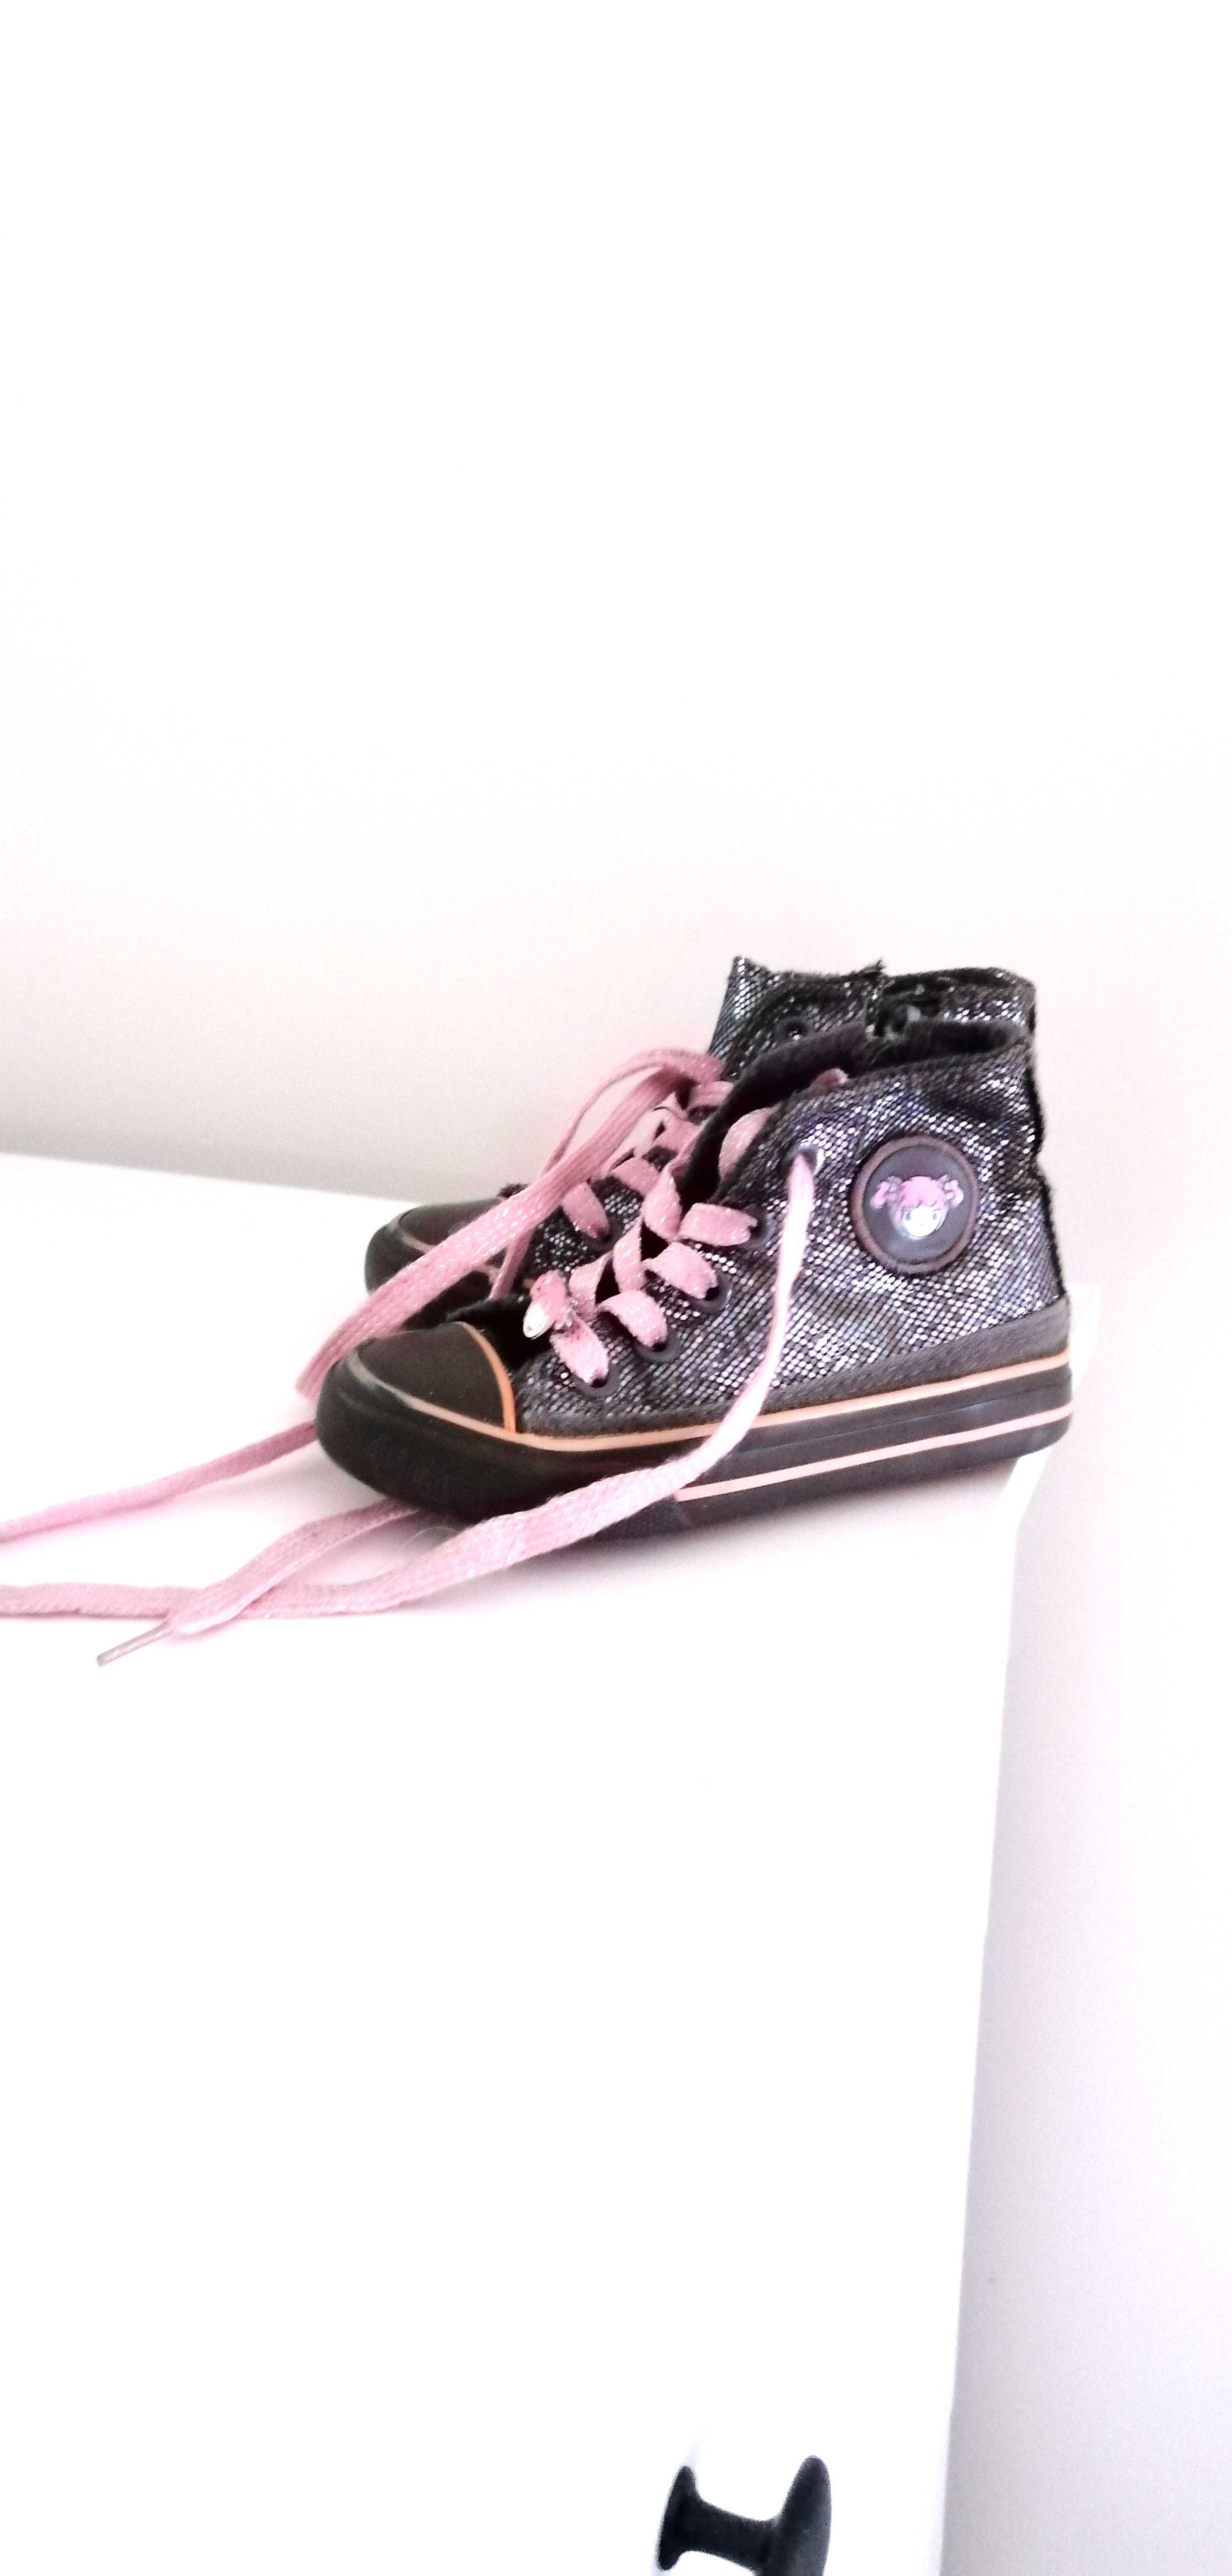 CCC ciemne czarne różowe dziewczęce dziecięce trampki buty 25 nelliblu